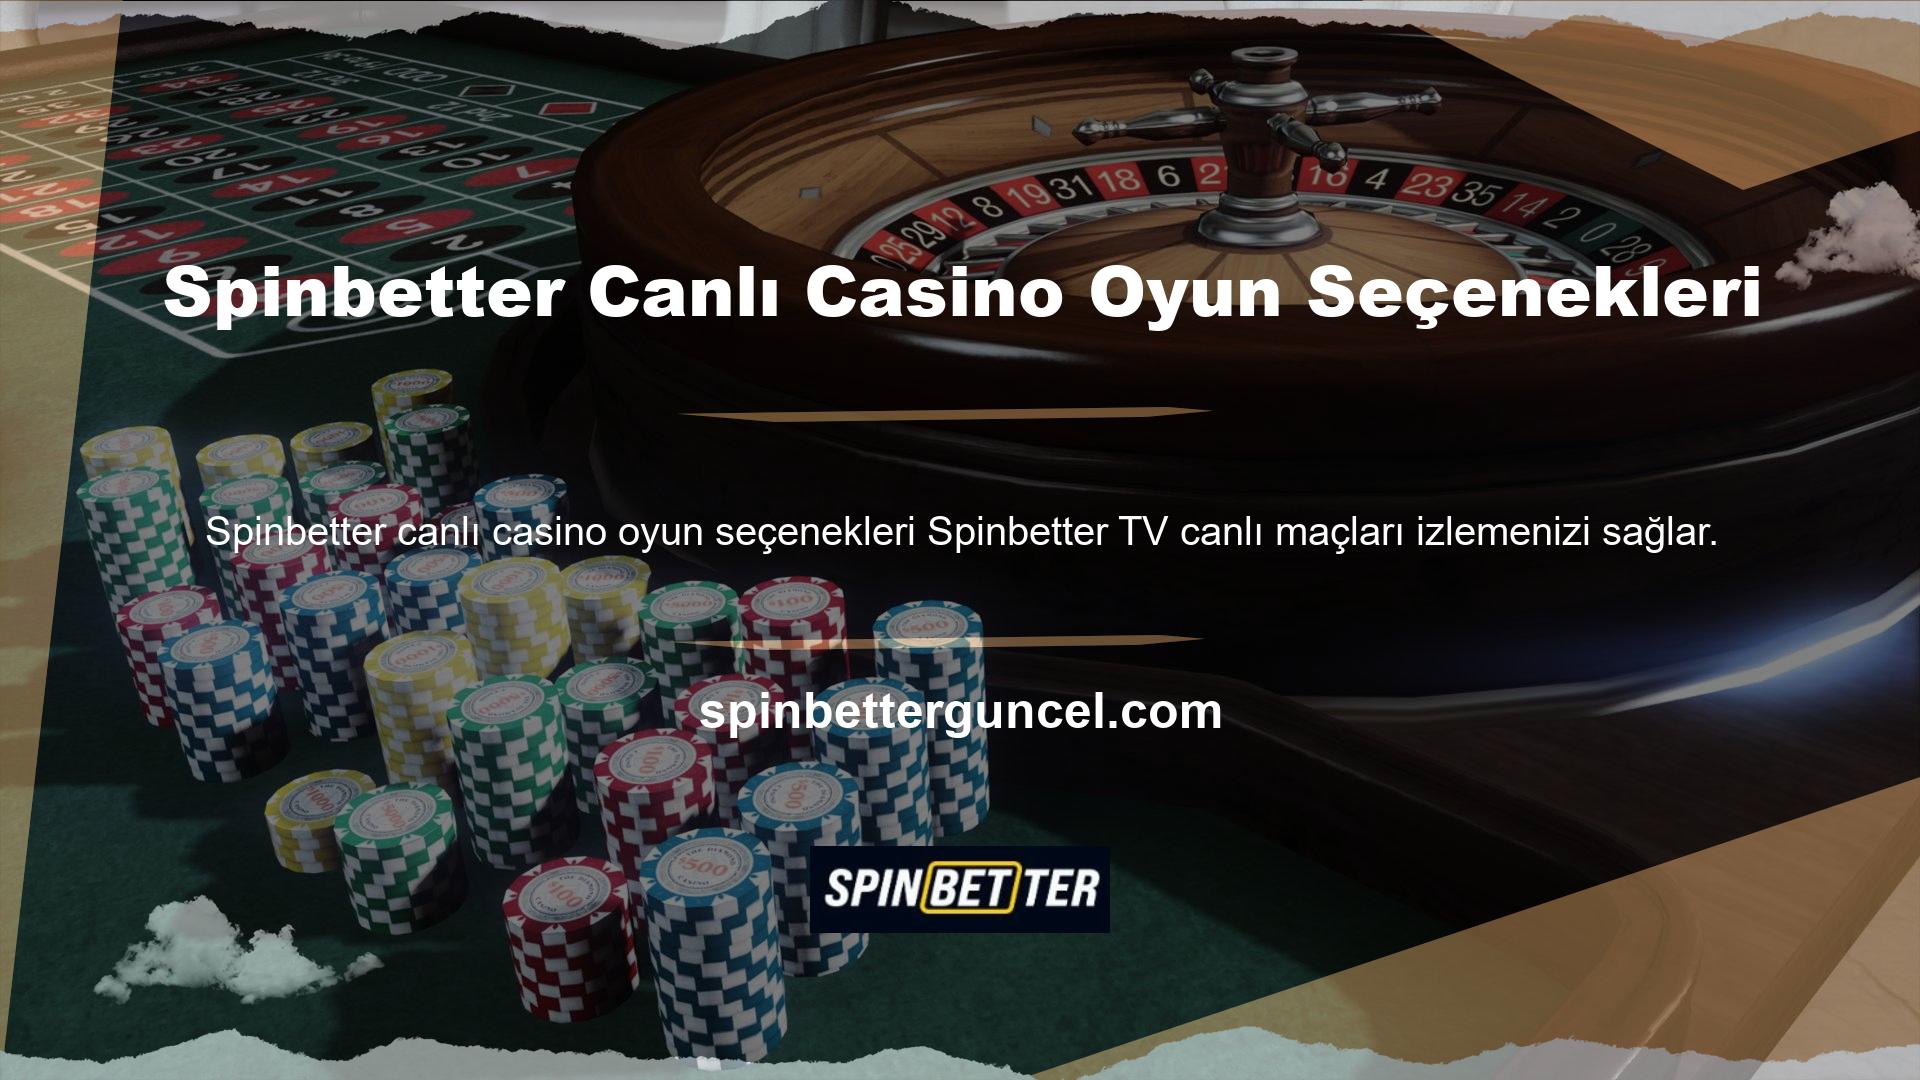 Yani Spinbetter sitesinde hem casino oyunları hem de casino oyunları bulunmaktadır